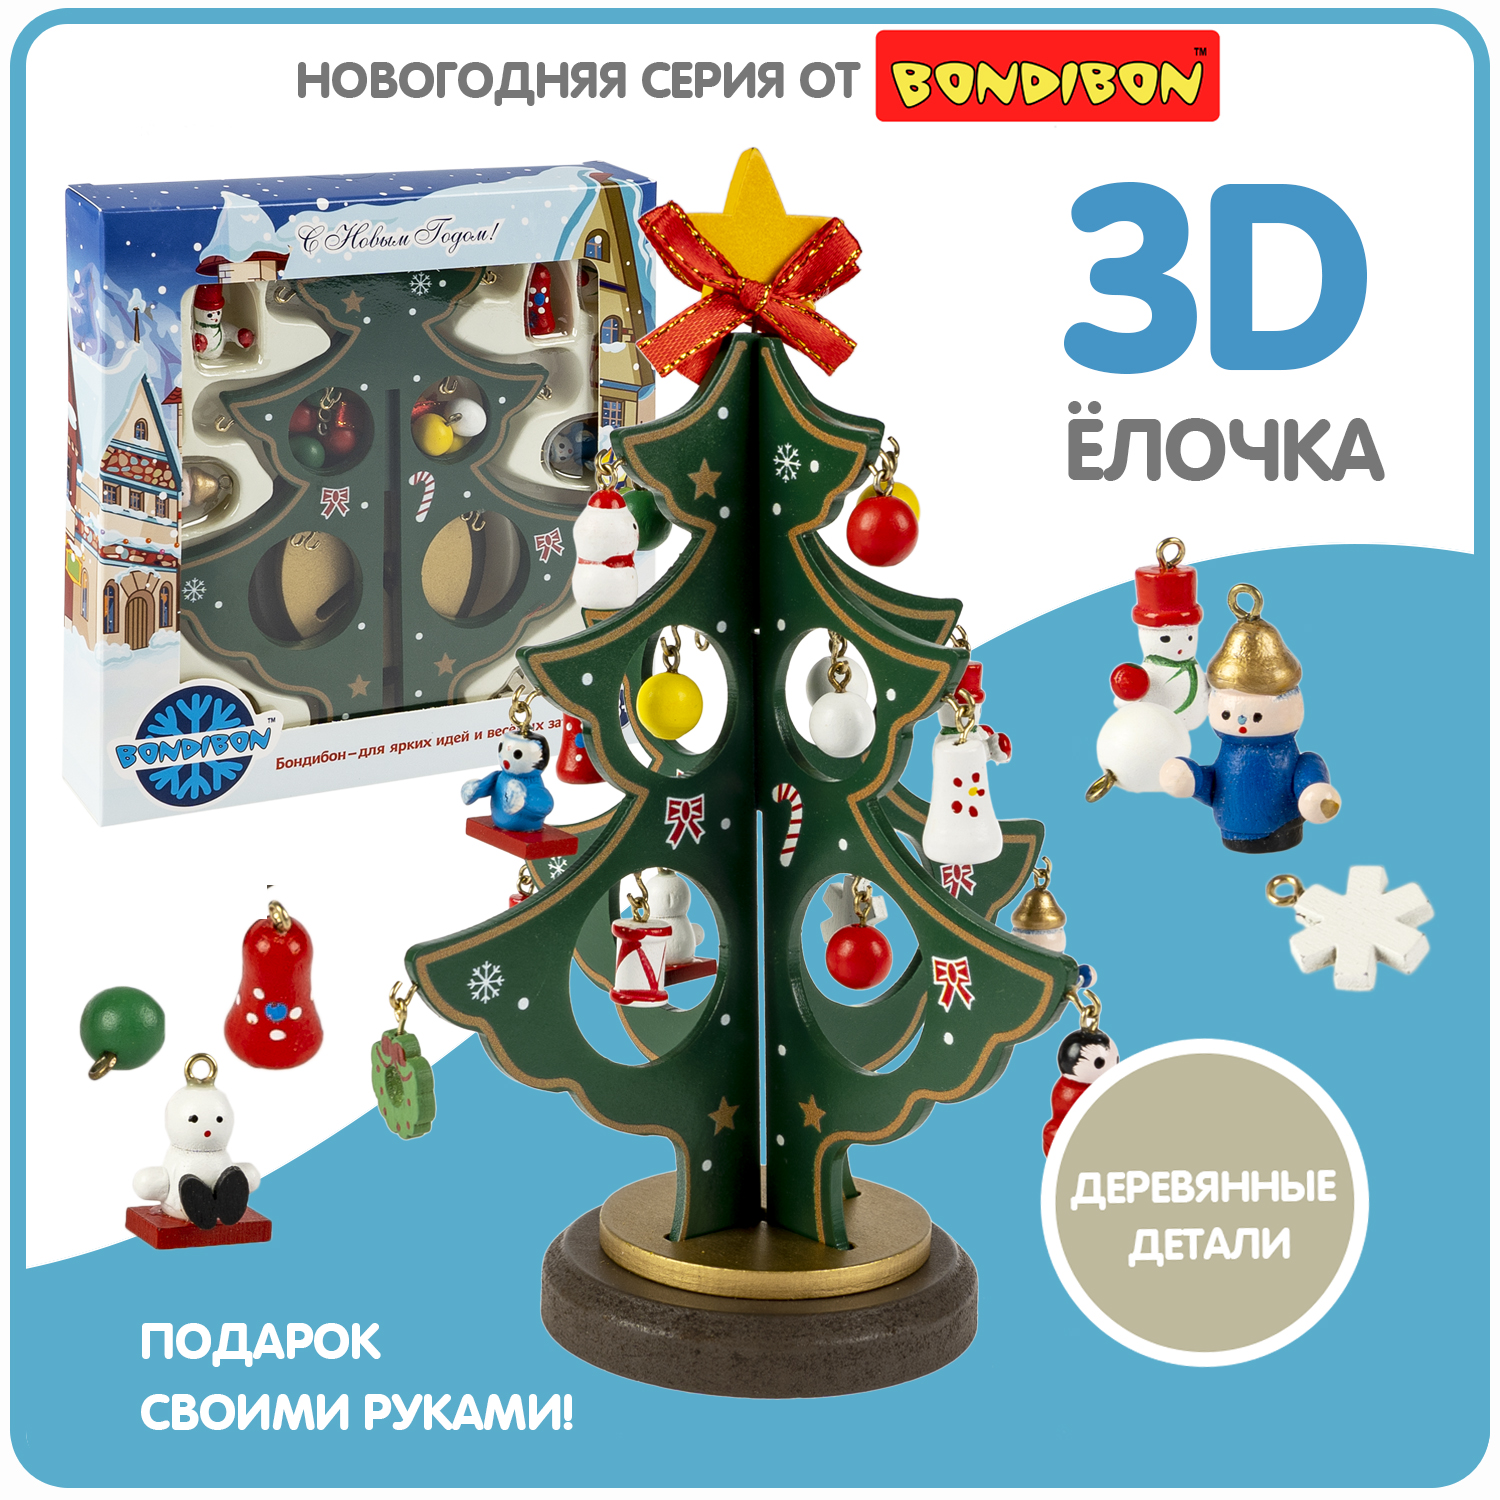 Новогодний набор Bondibon Деревянная ёлочка 3D с игрушками, высота 19,5см